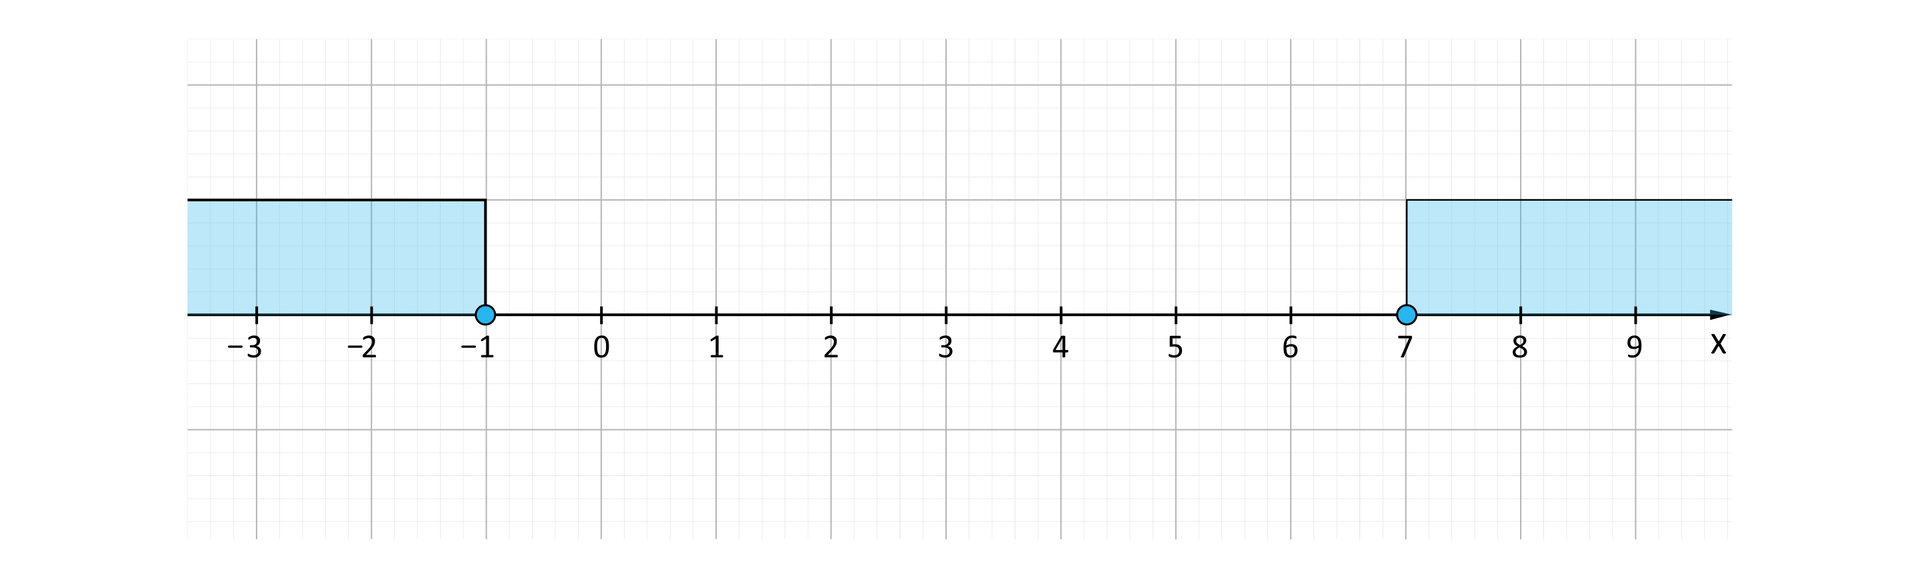 Ilustracja przedstawia poziomą oś X od minus trzech do dziewięciu. Na osi zaznaczono dwa przedziały: prawostronnie domknięty od minus nieskończoności do minus jeden i lewostronnie domknięty od siedem do plus nieskończoności.